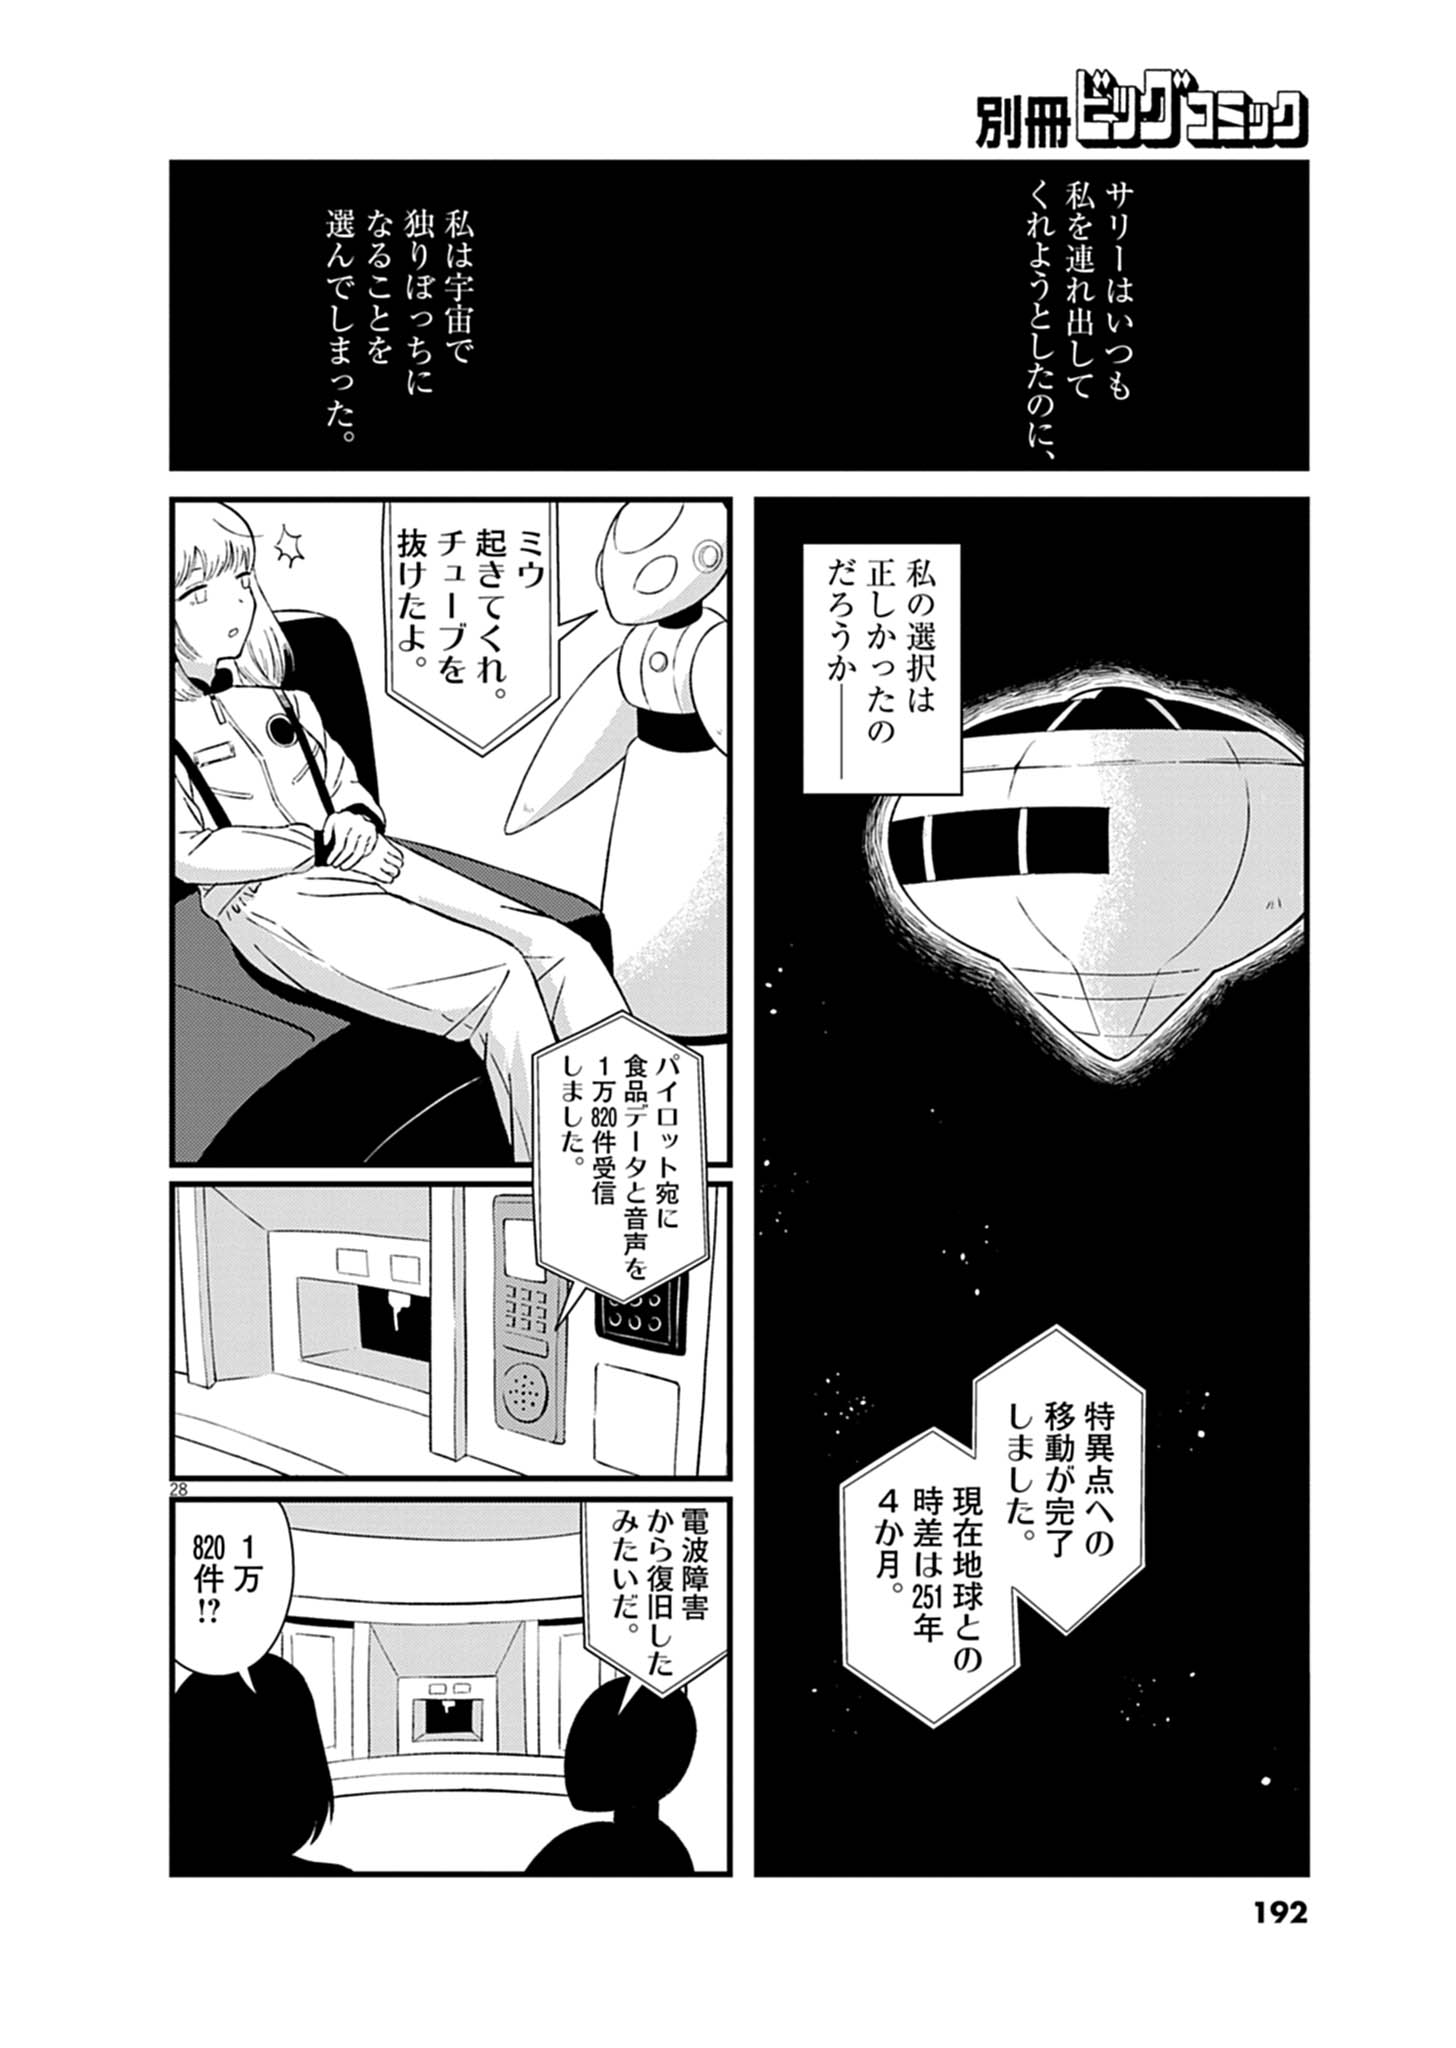 【漫画】『ミウと方舟』の画像